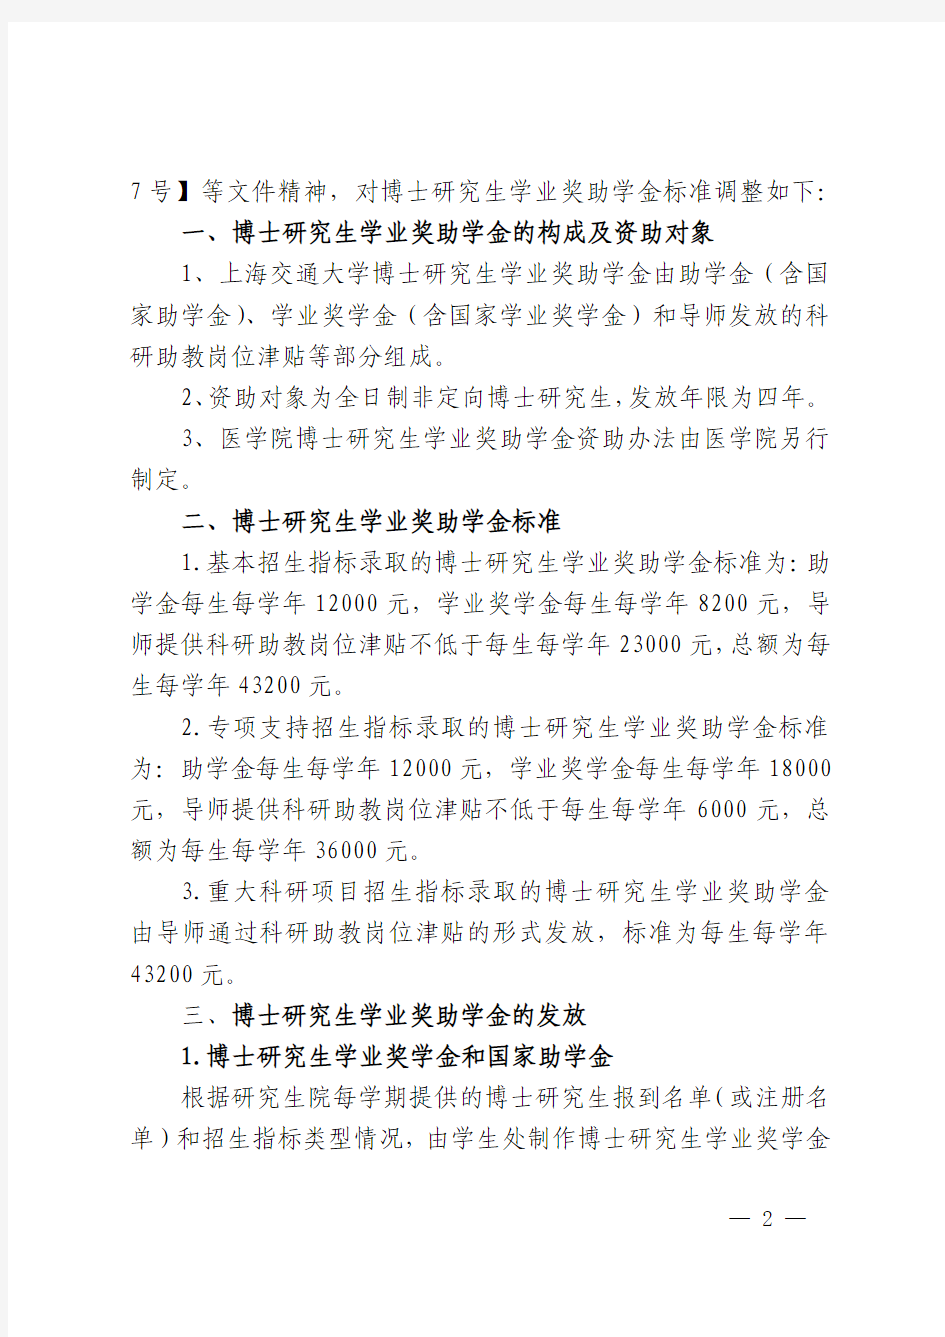 上海交通大学关于调整博士研究生学业奖助学金标准的通知